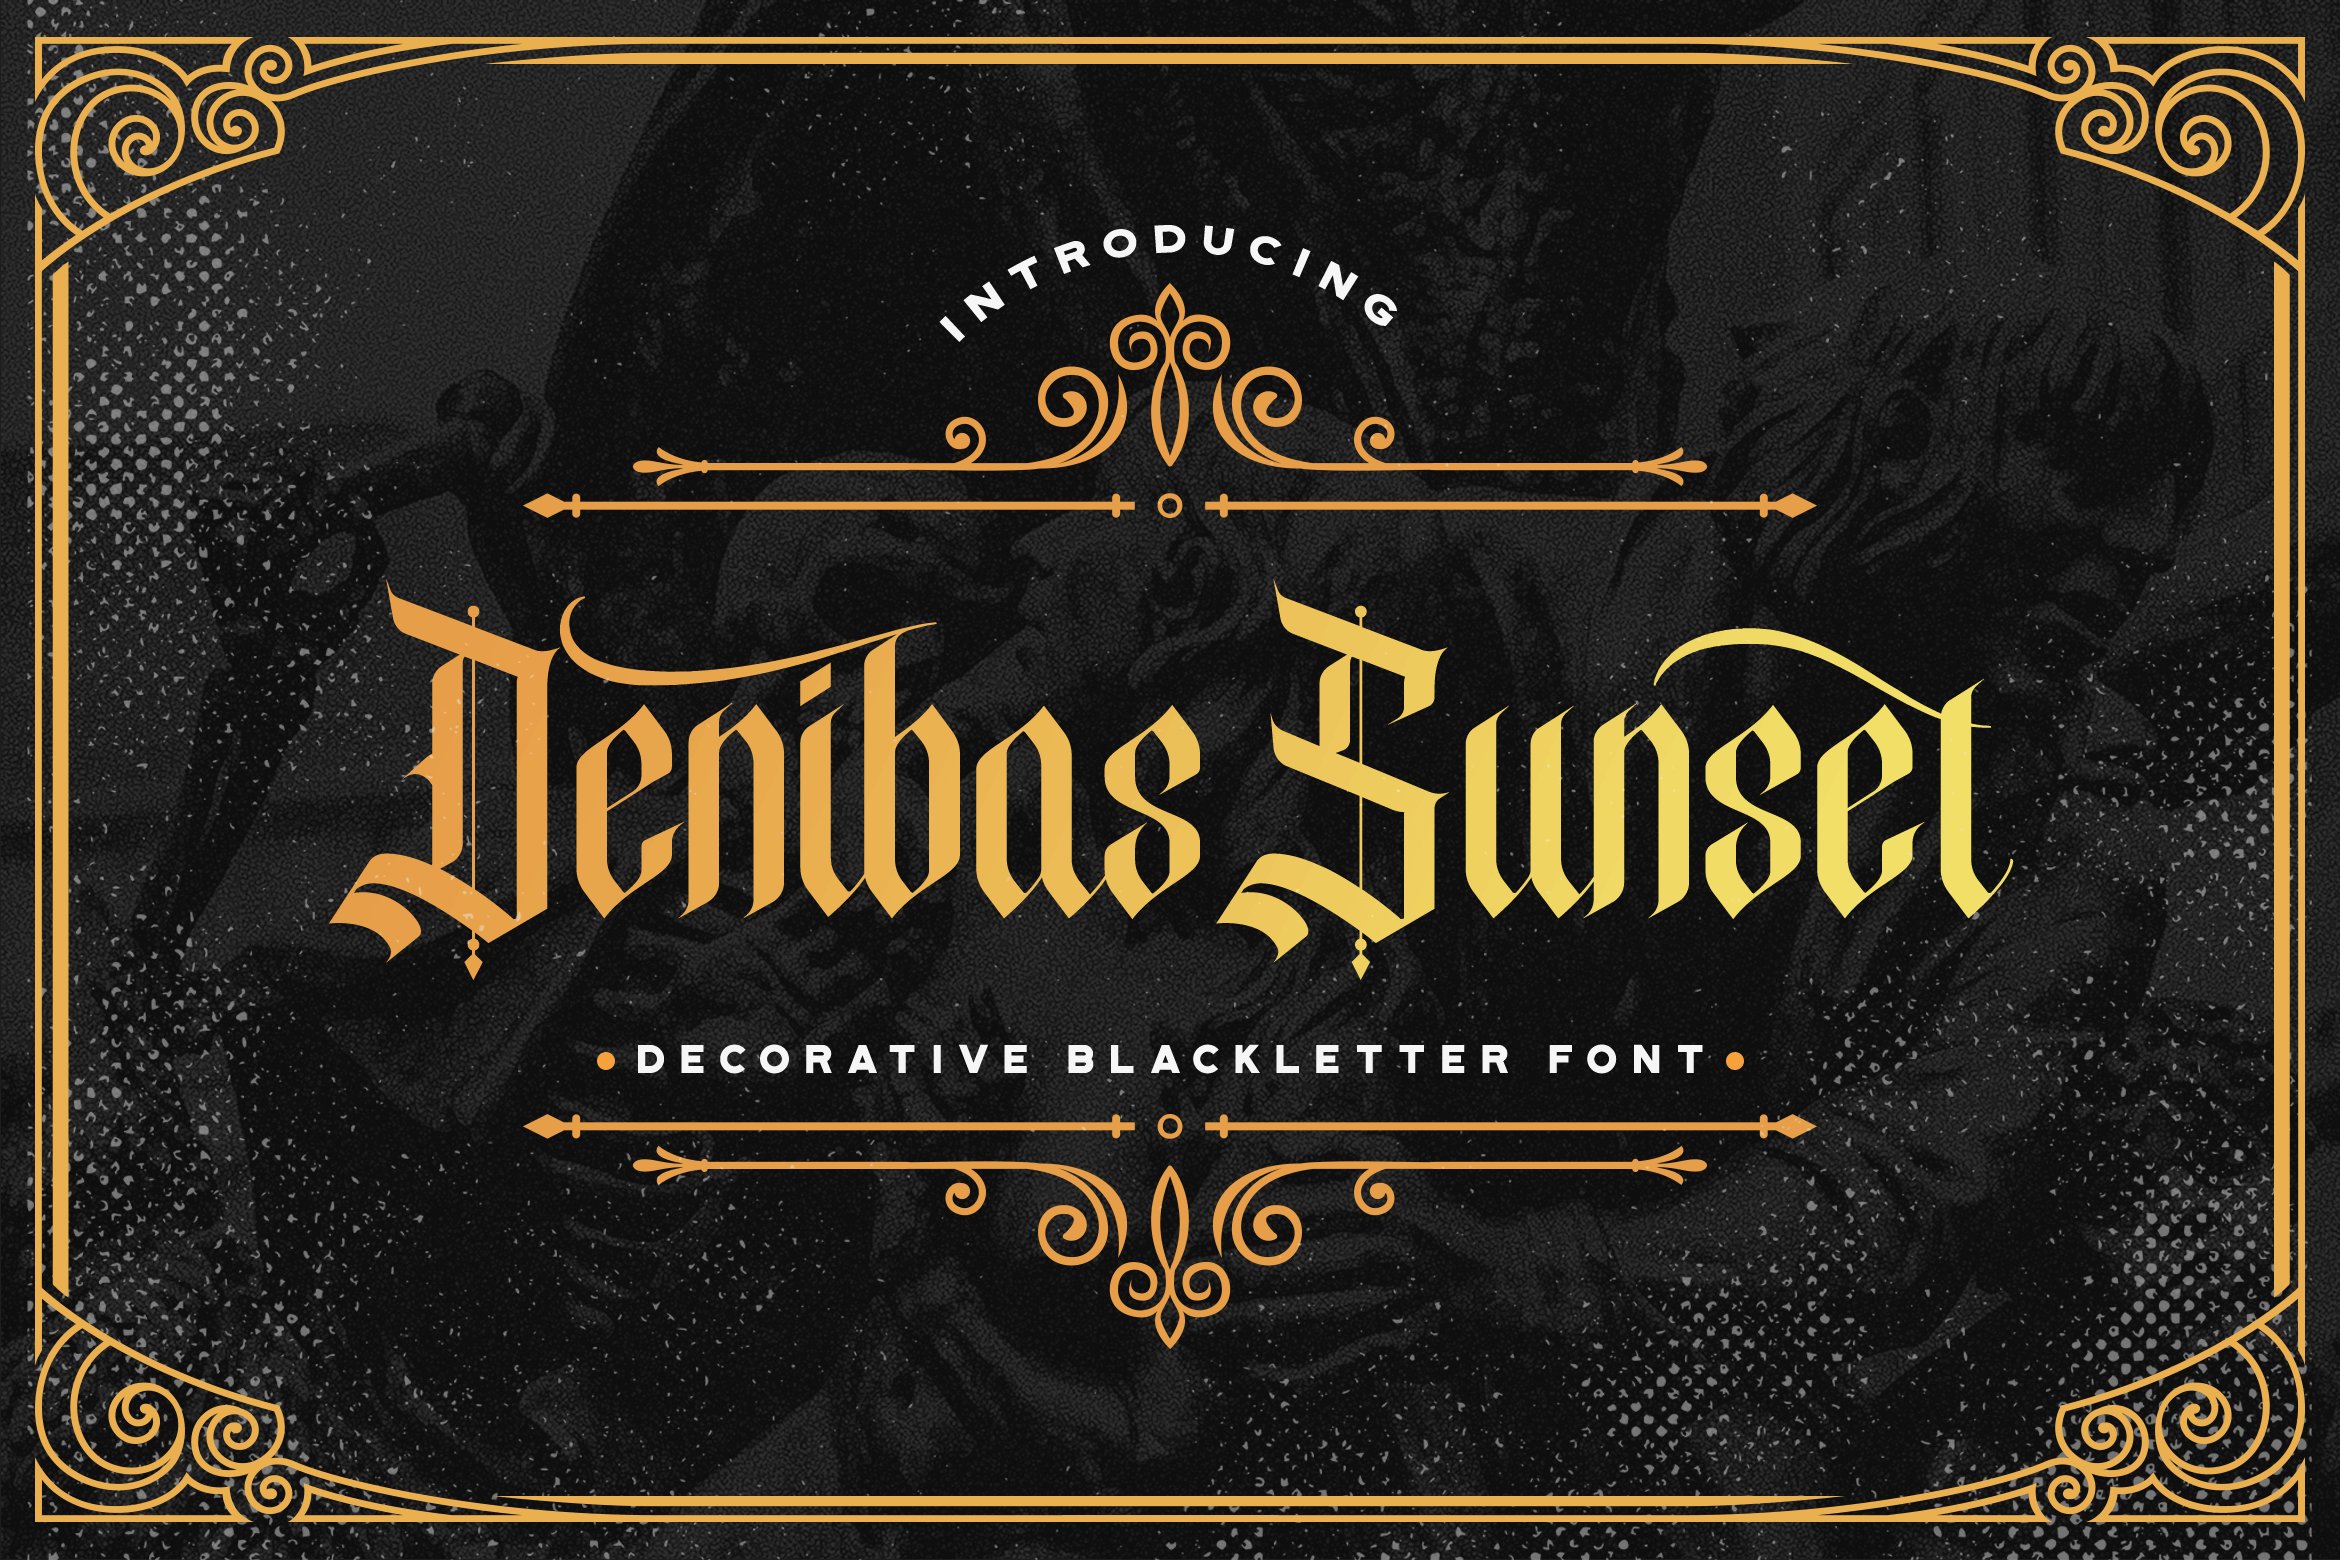 Denibas Sunset - Blackletter Font cover image.